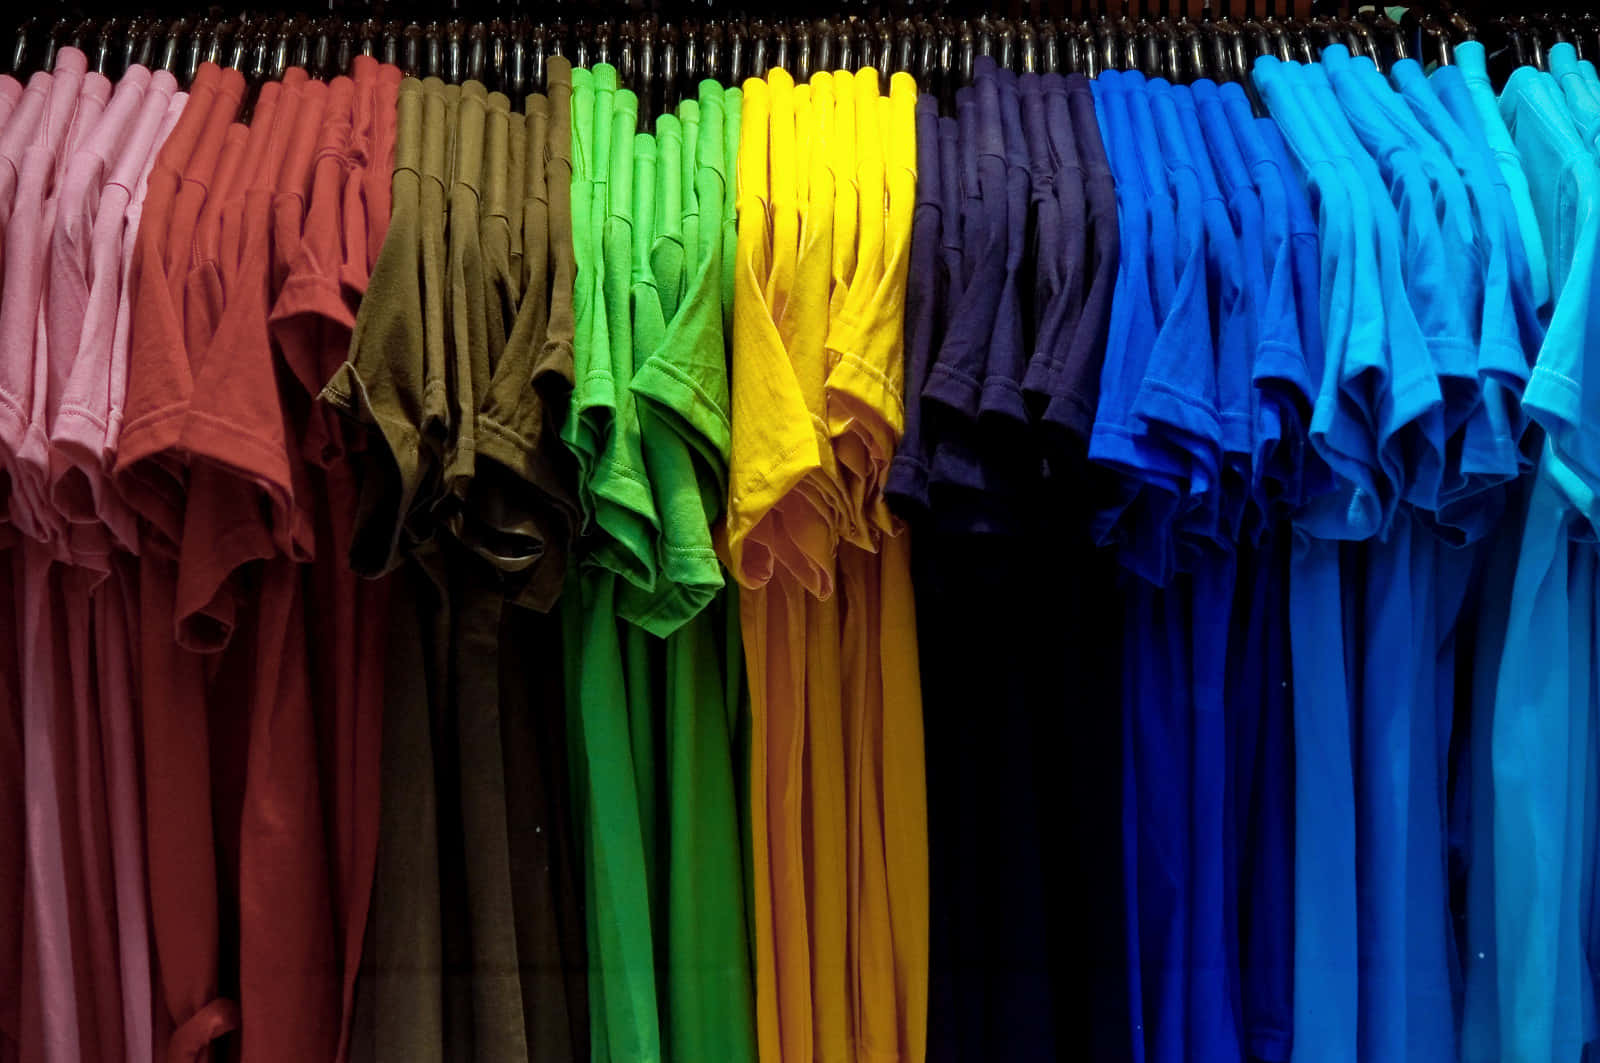 Imagende Camisas De Colores En Una Tienda De Ropa.